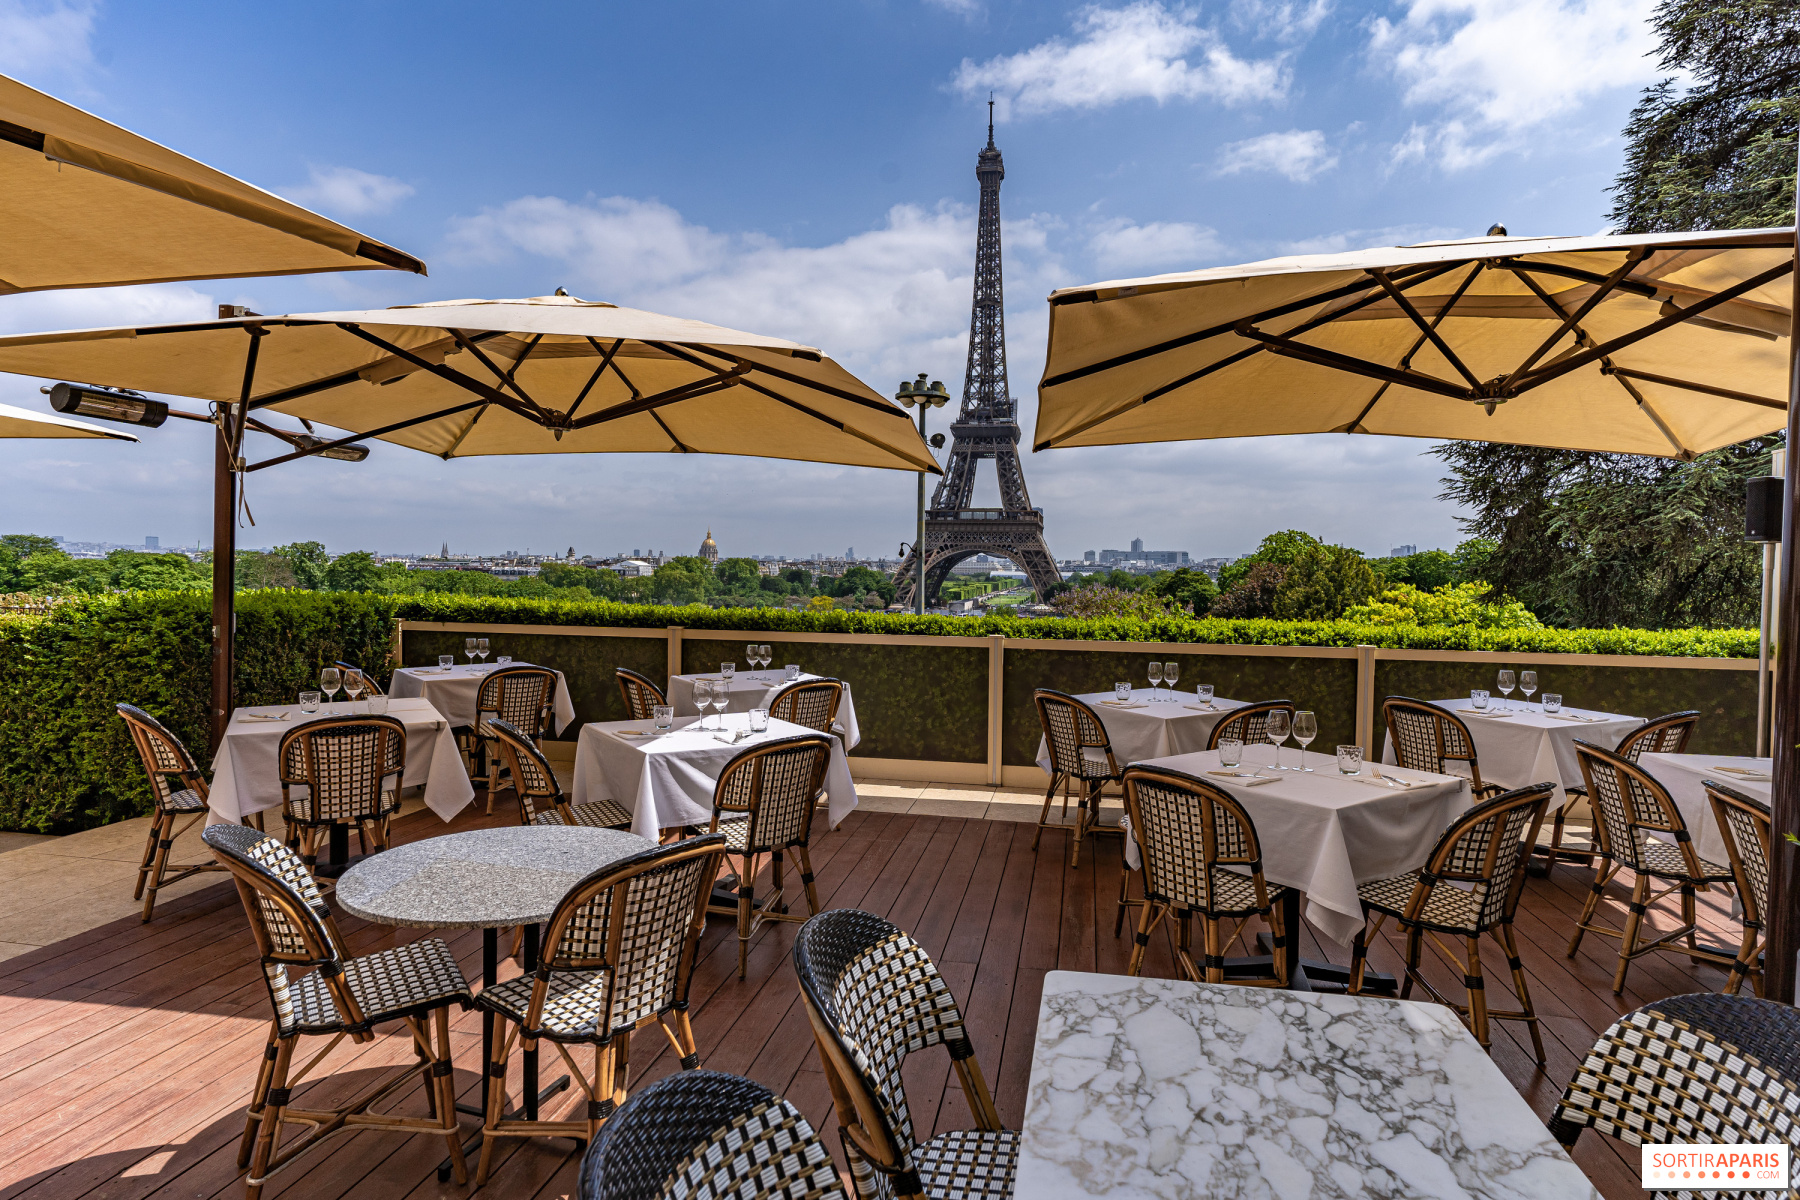 Café de l'Homme - Rooftop bar Paris  Paris restaurants, Paris hotels, Paris  rooftops